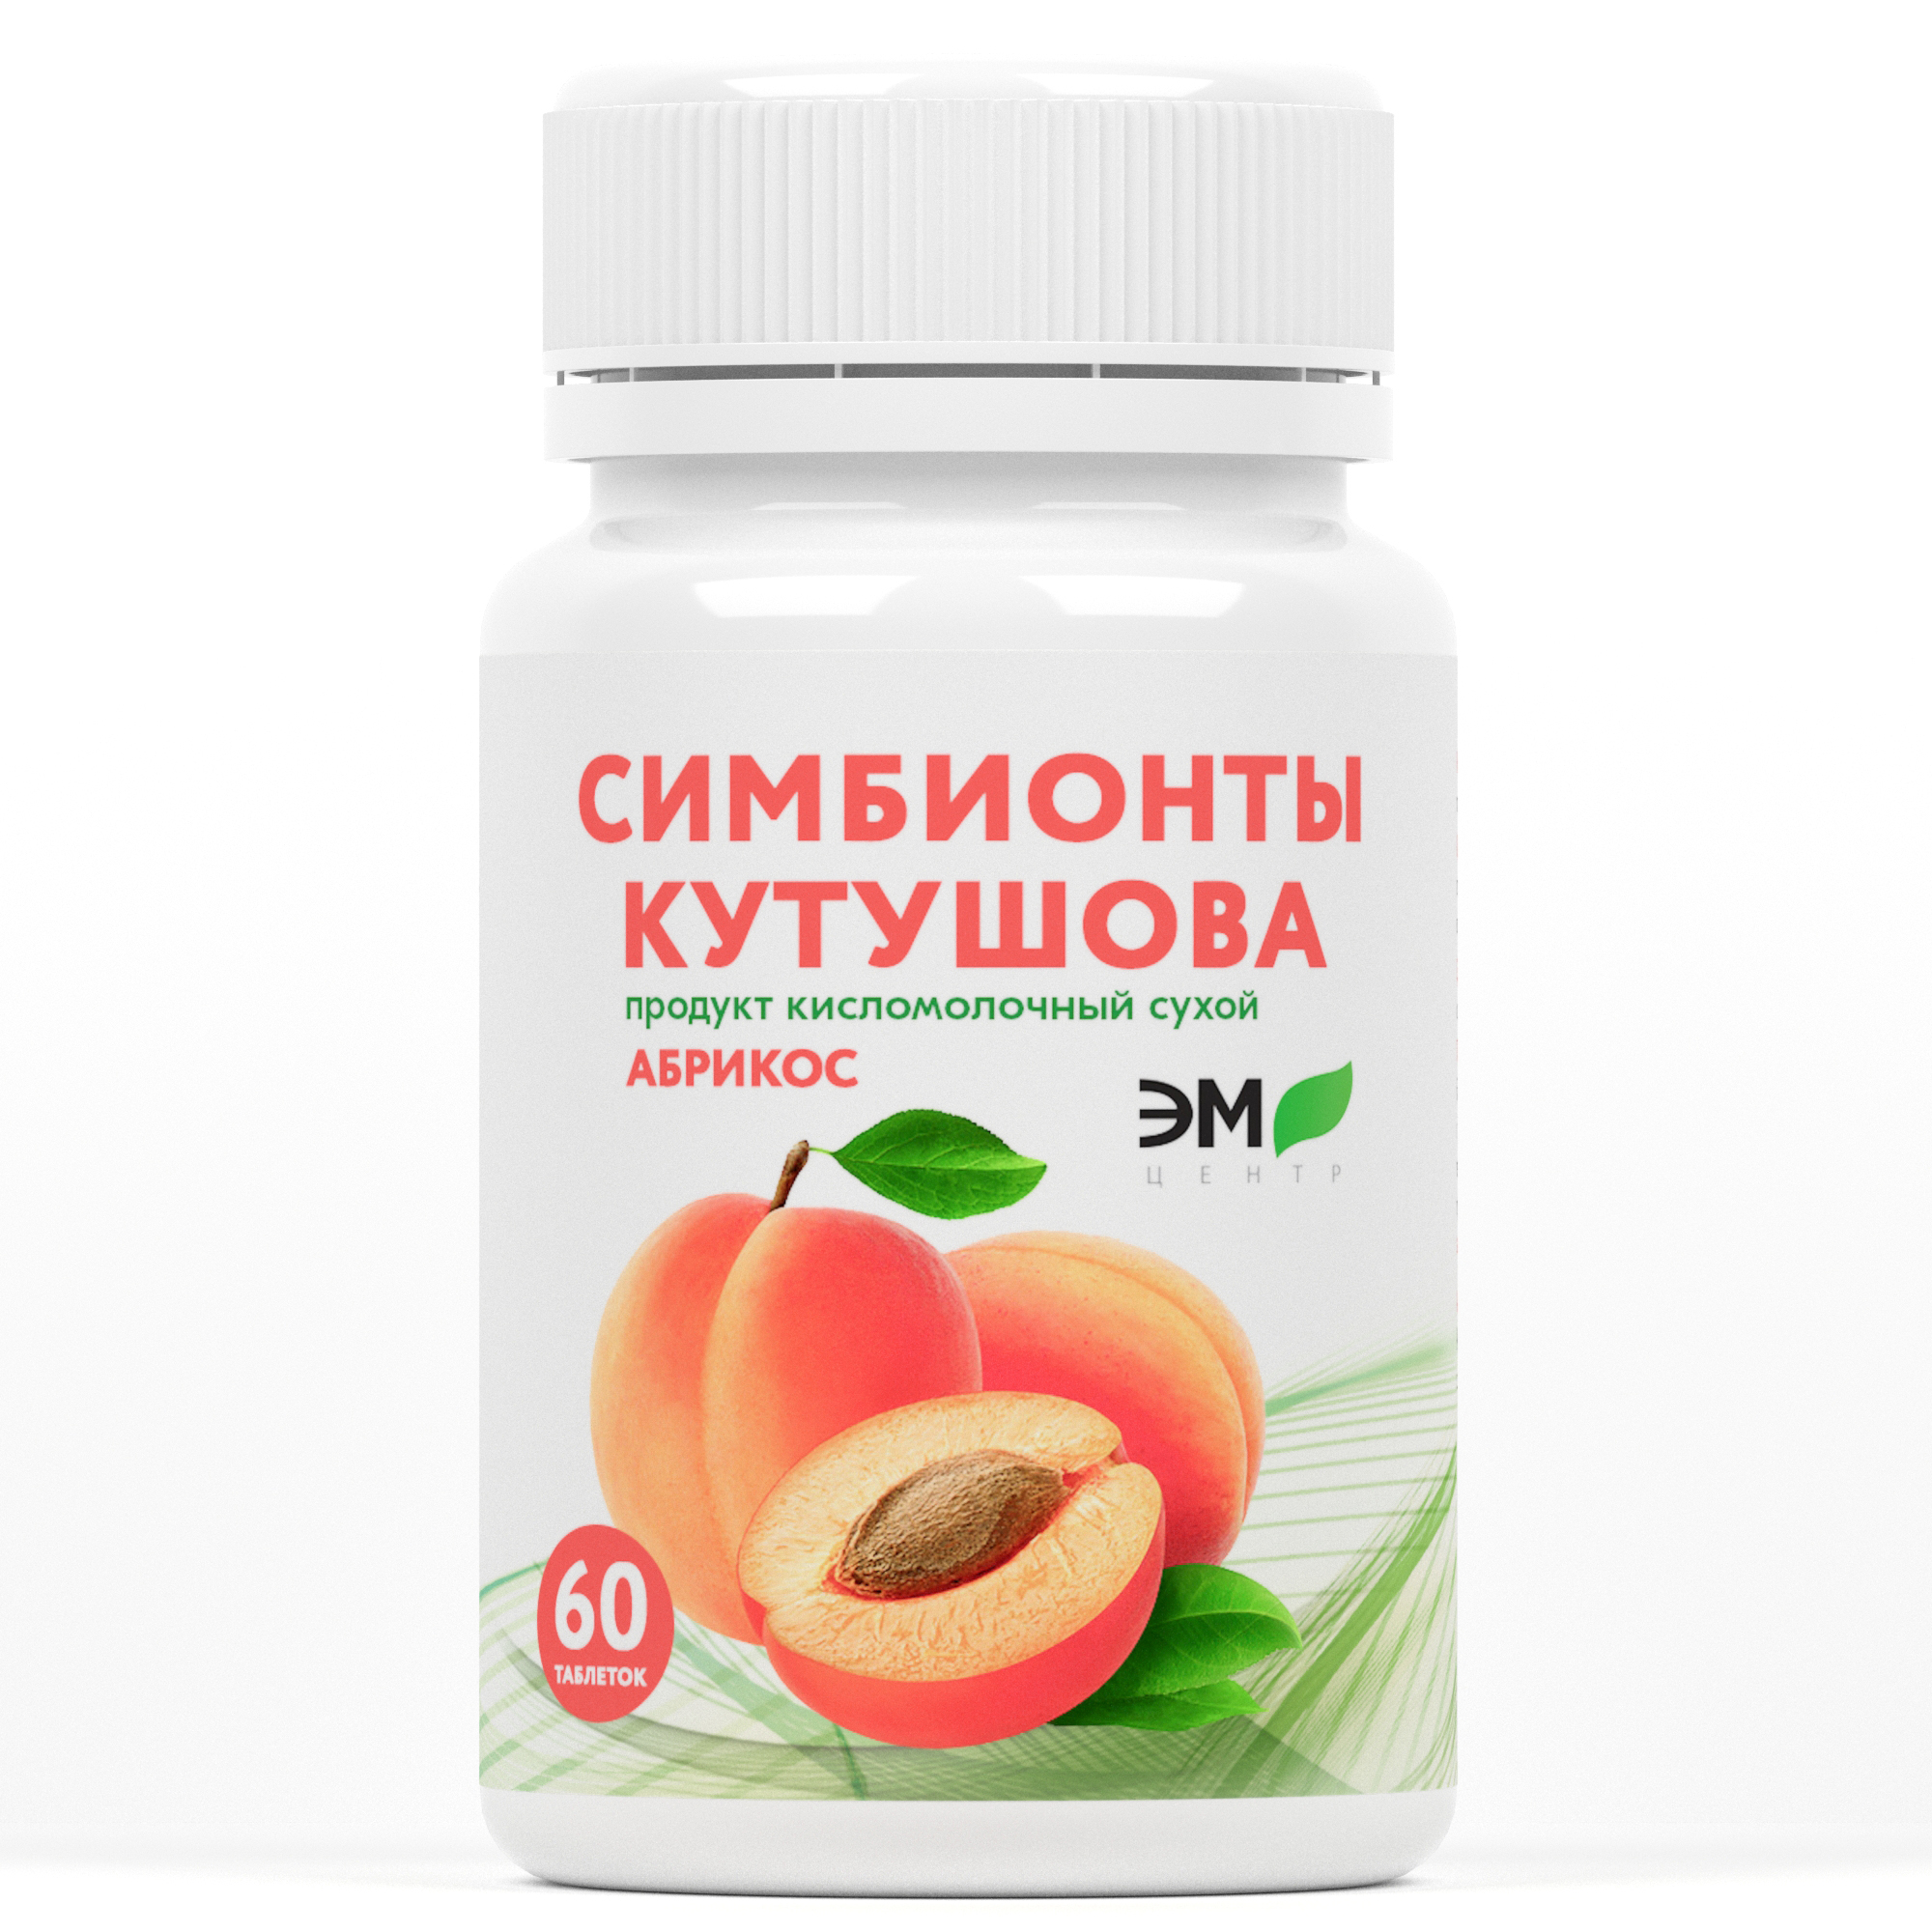 «Симбионты Кутушова» с абрикосом.